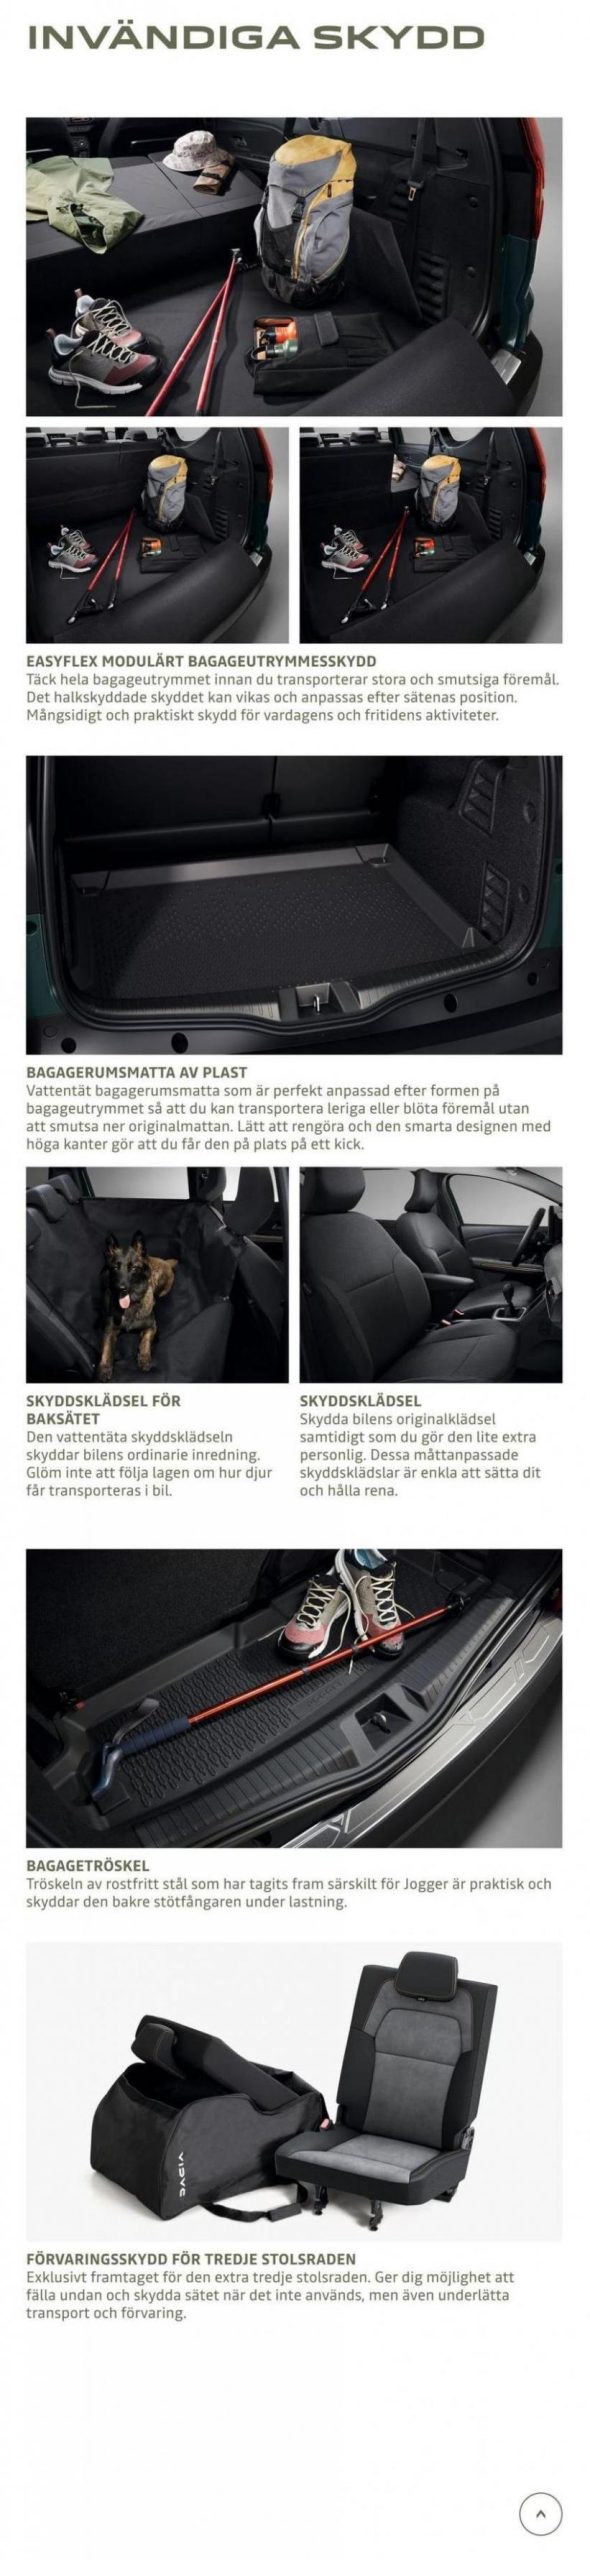 Dacia Jogger - Tillbehörskatalog. Page 10